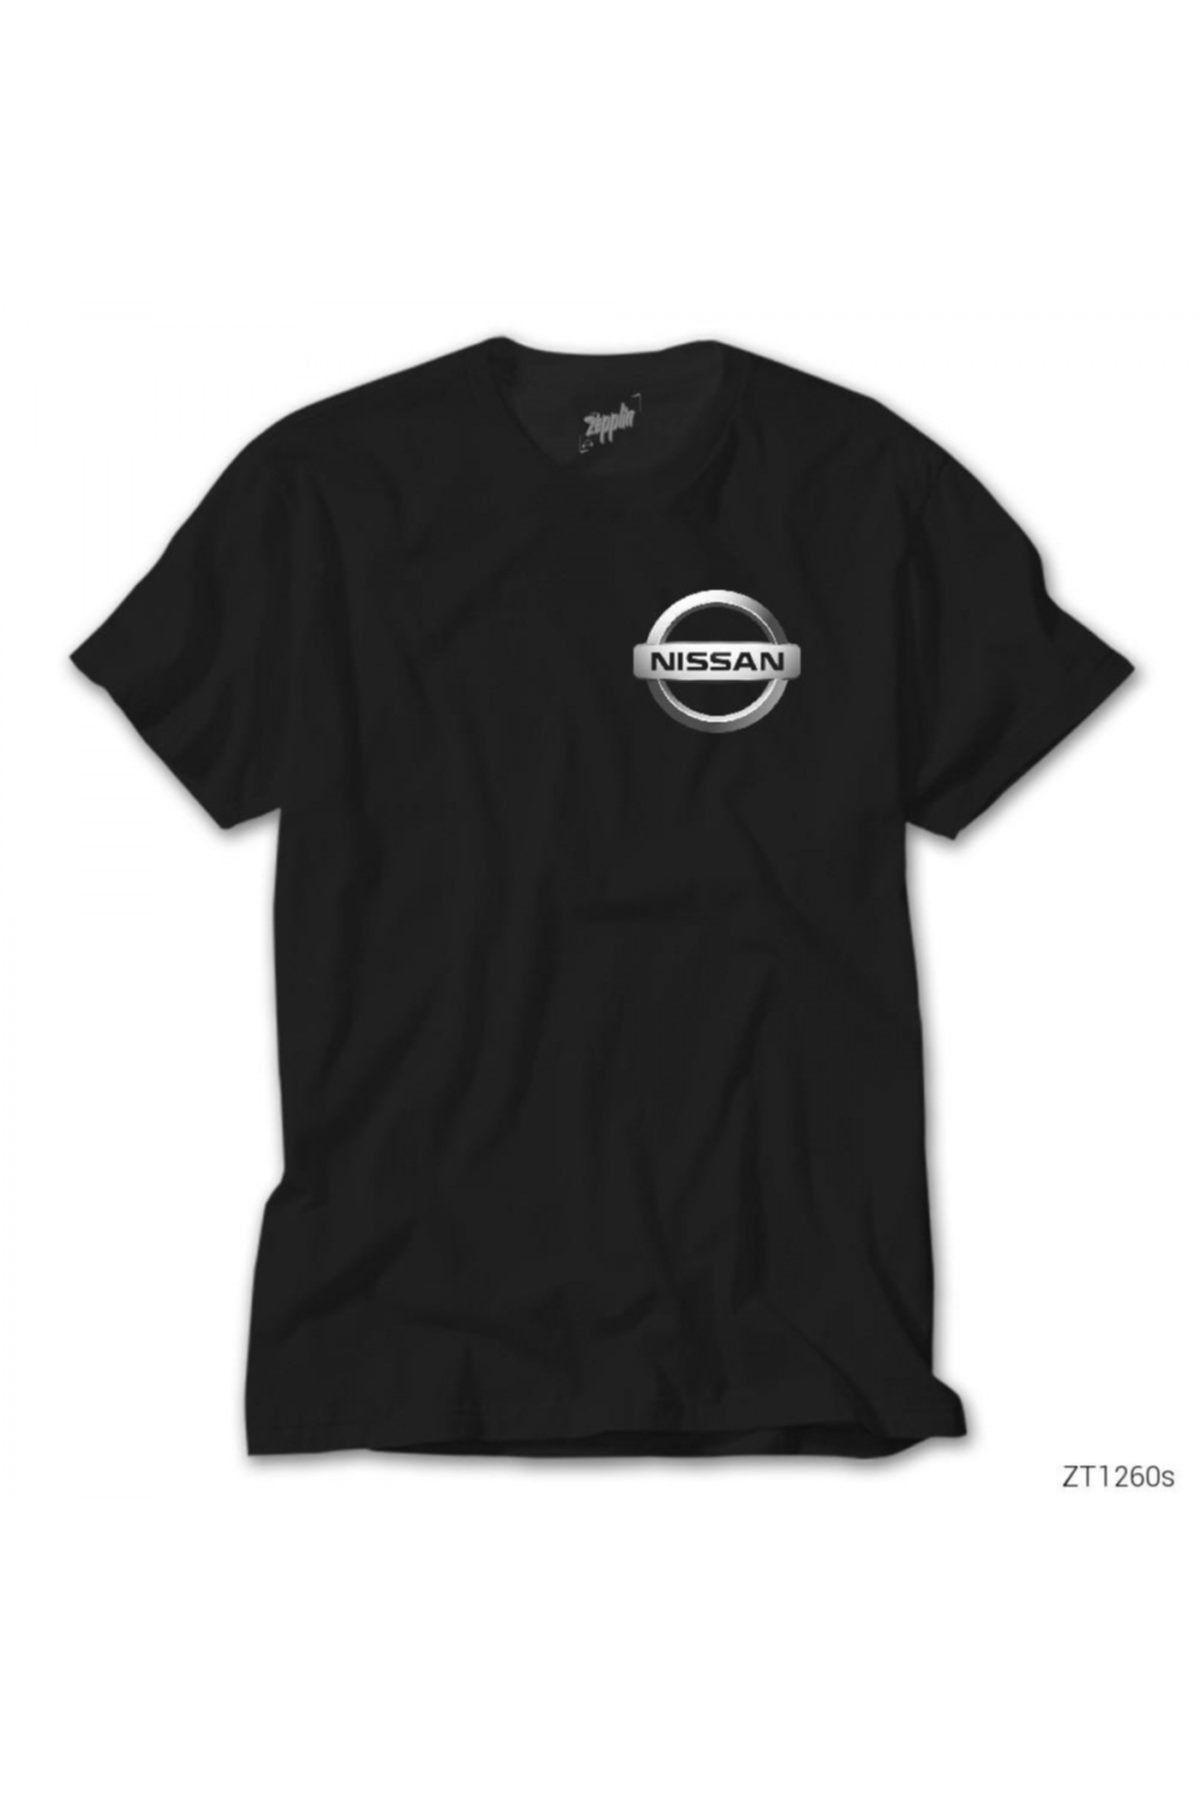 Z zepplin Unisex Nissan Logo Siyah Tişört